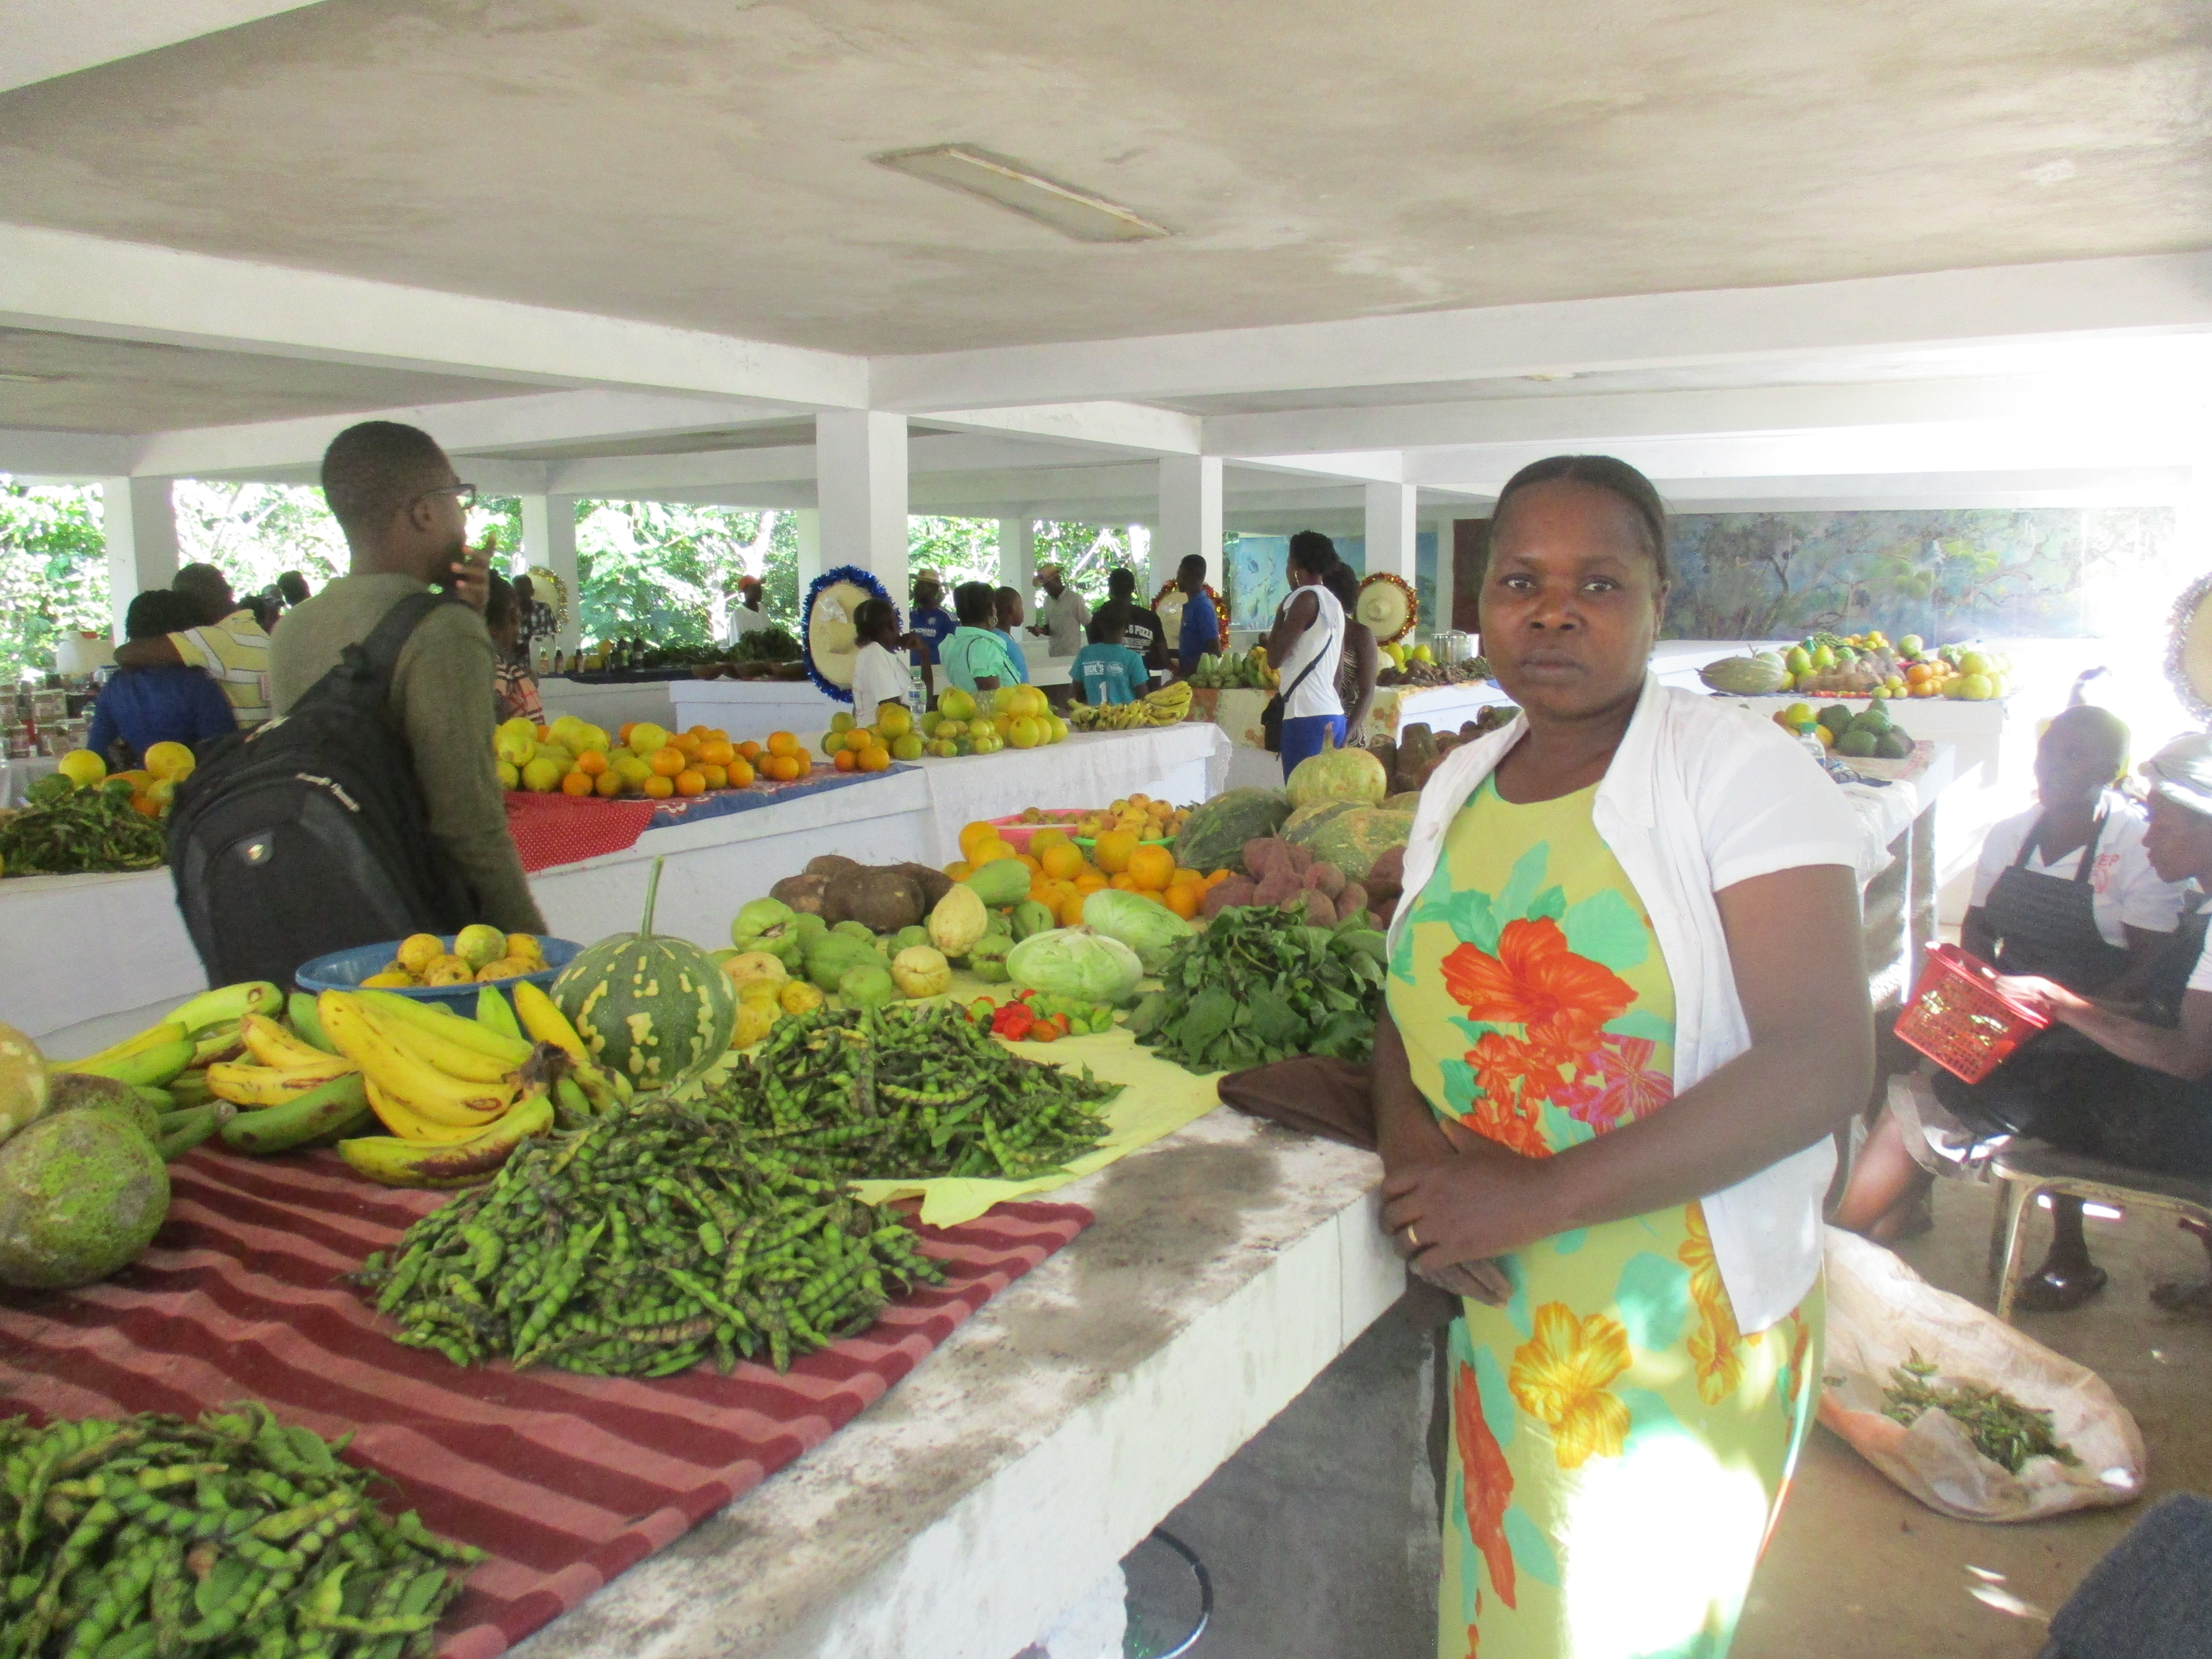 Os mercados liderados por mulheres, como Nana, mudaram a realidade de comunidades no Haiti e garantem a renda de diversas famílias / Foto: Elizabeth Richard / ActionAid